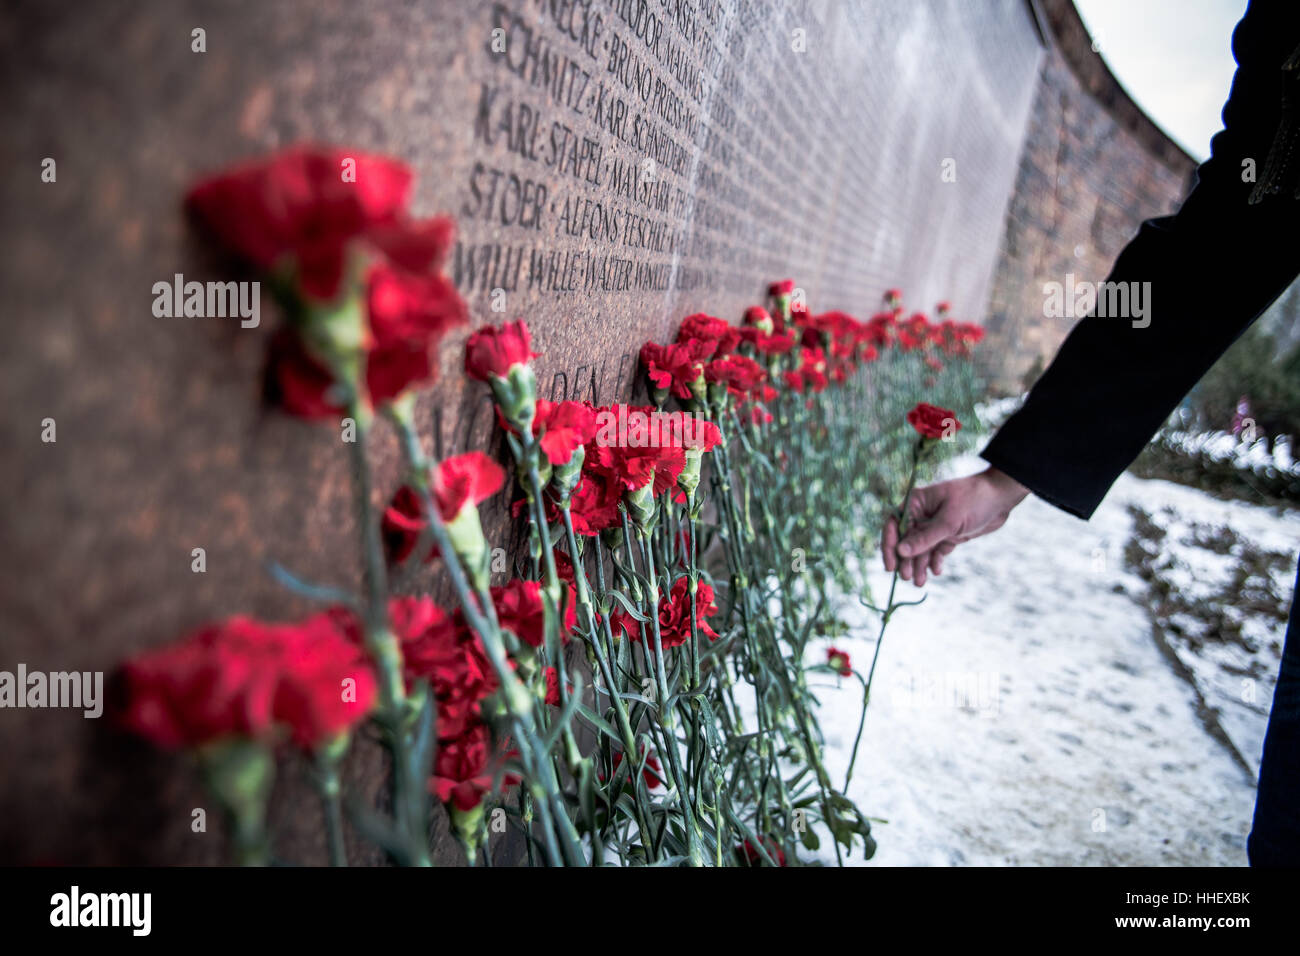 Un homme ajoute une red carnation d'une tombe de Berlin Friedrichsfelde Friedhof memorial lors de l'Assemblée de l'assassinat de Karl Liebknecht et Rosa Luxemburg Banque D'Images